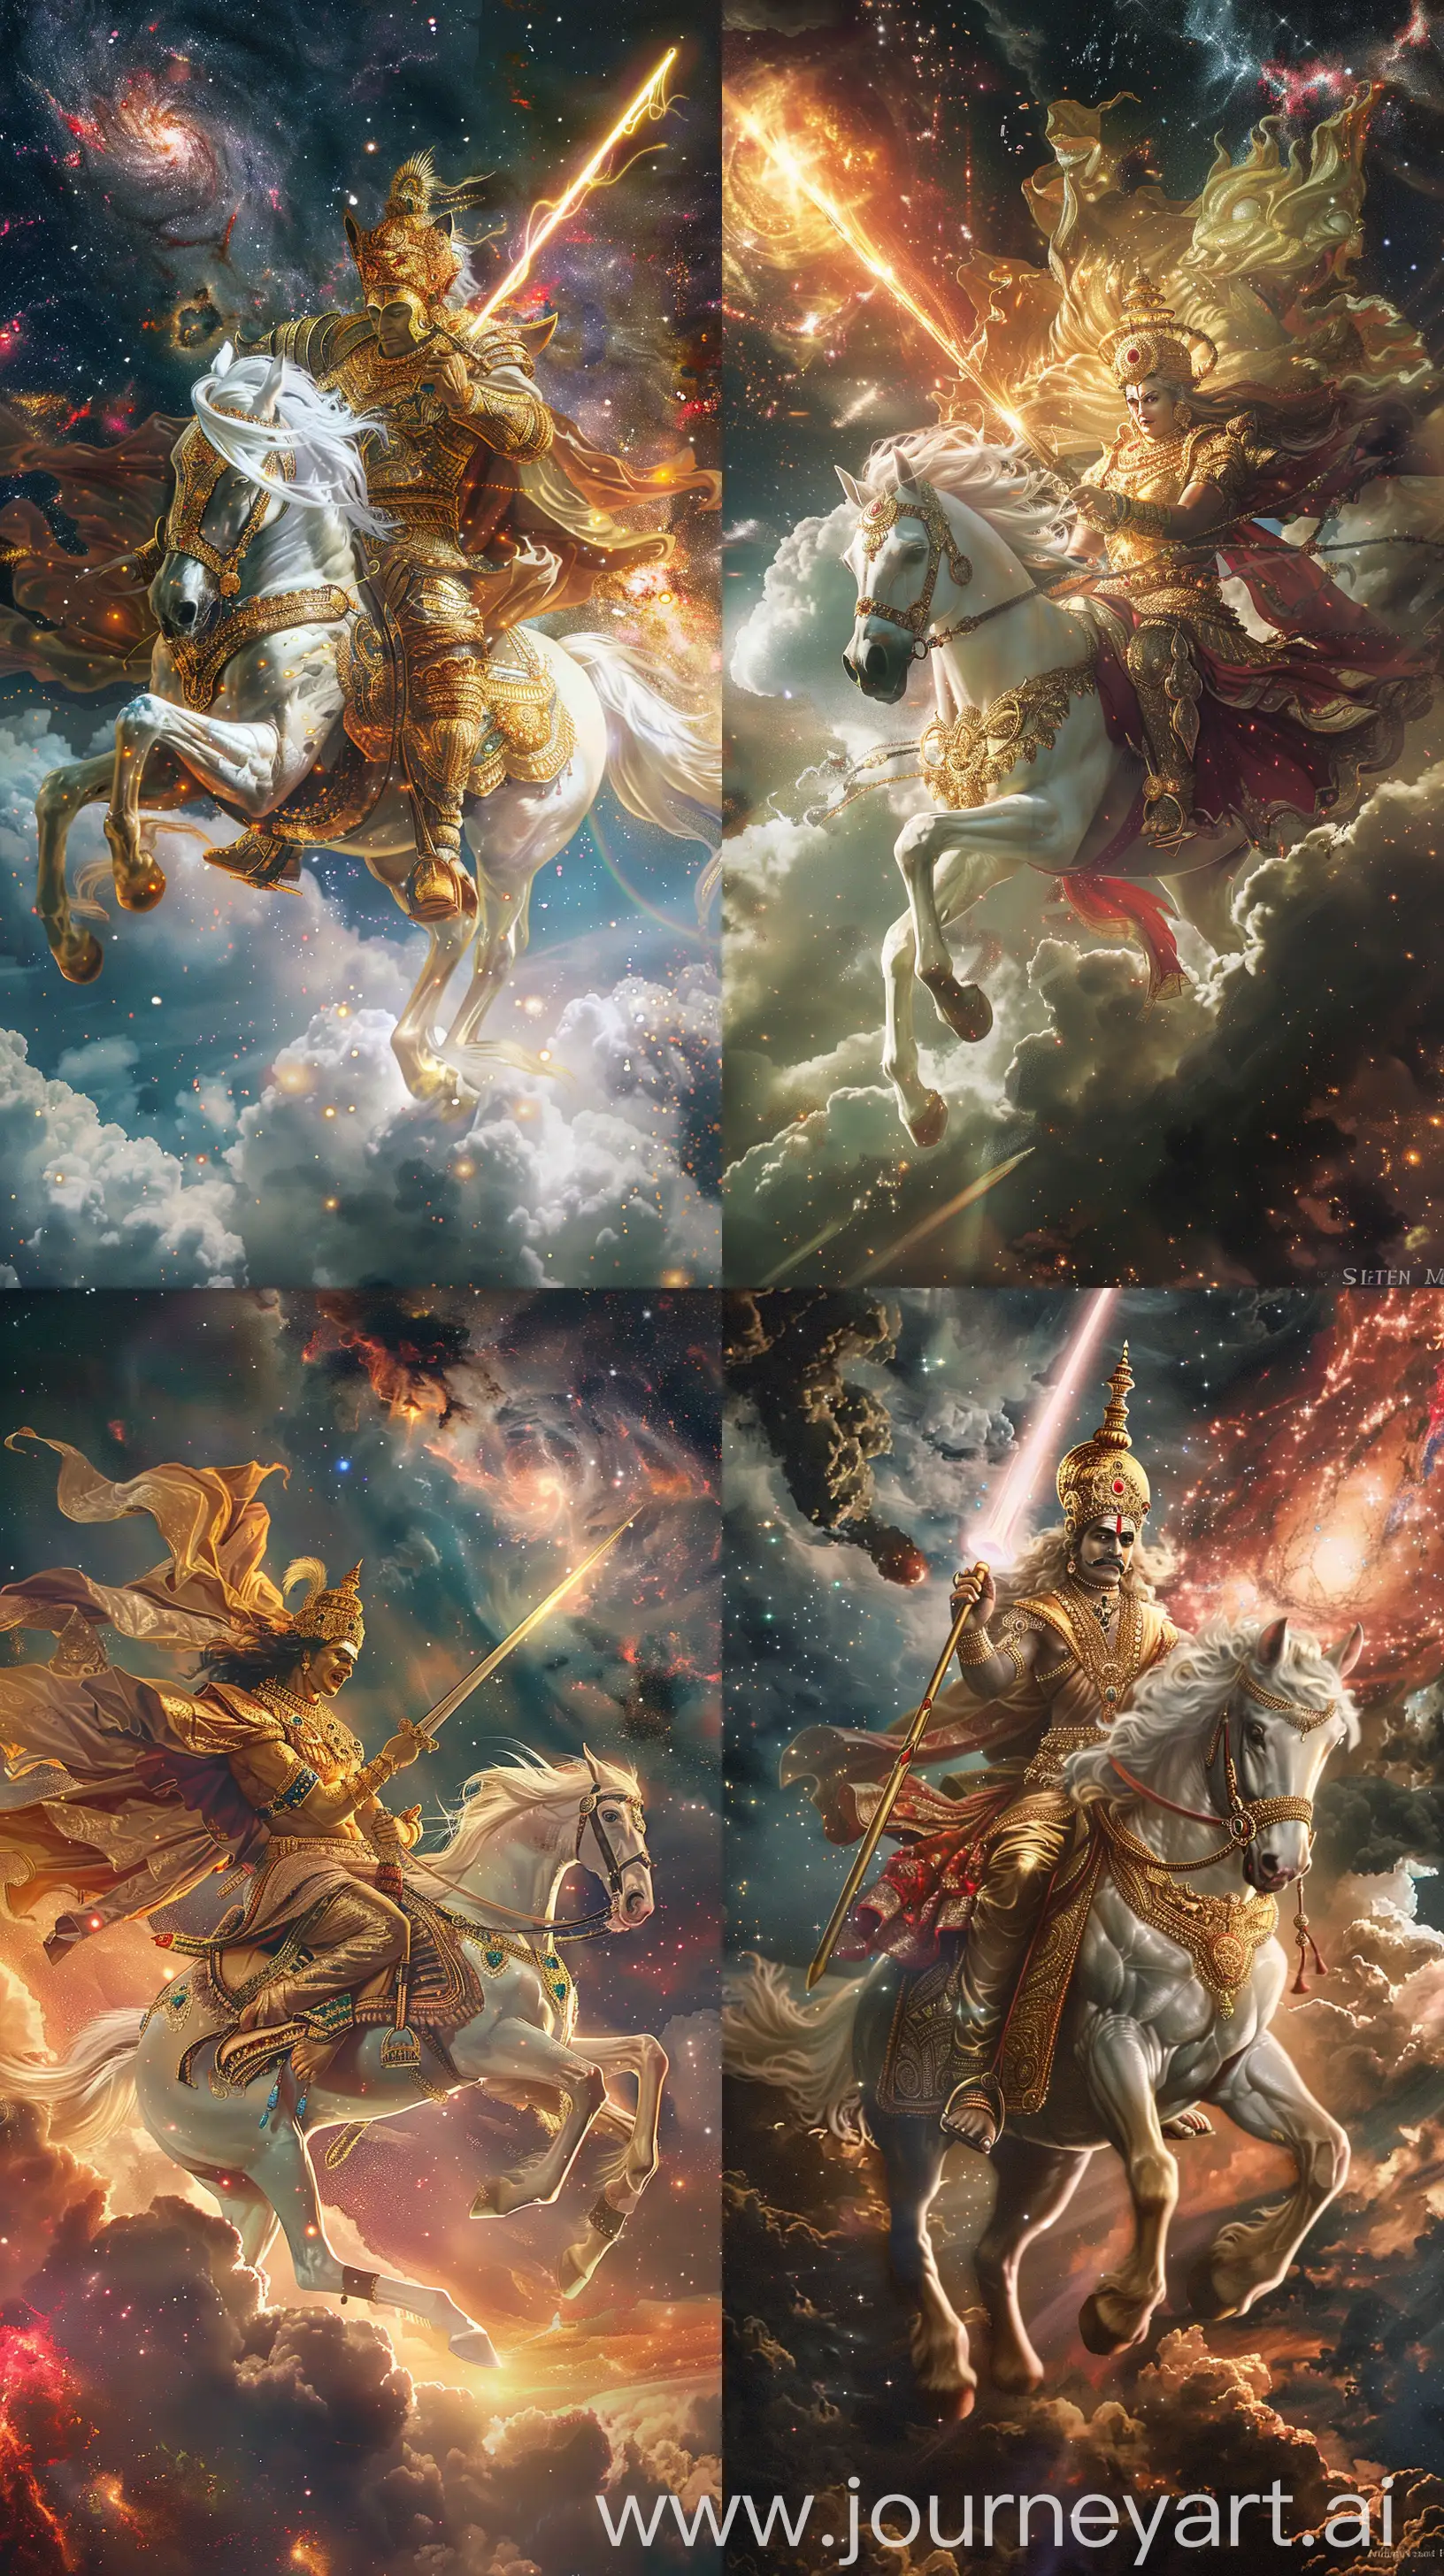 Divine-Hindu-God-Kalki-Riding-White-Horse-with-Radiant-Sword-in-Cosmic-Scene